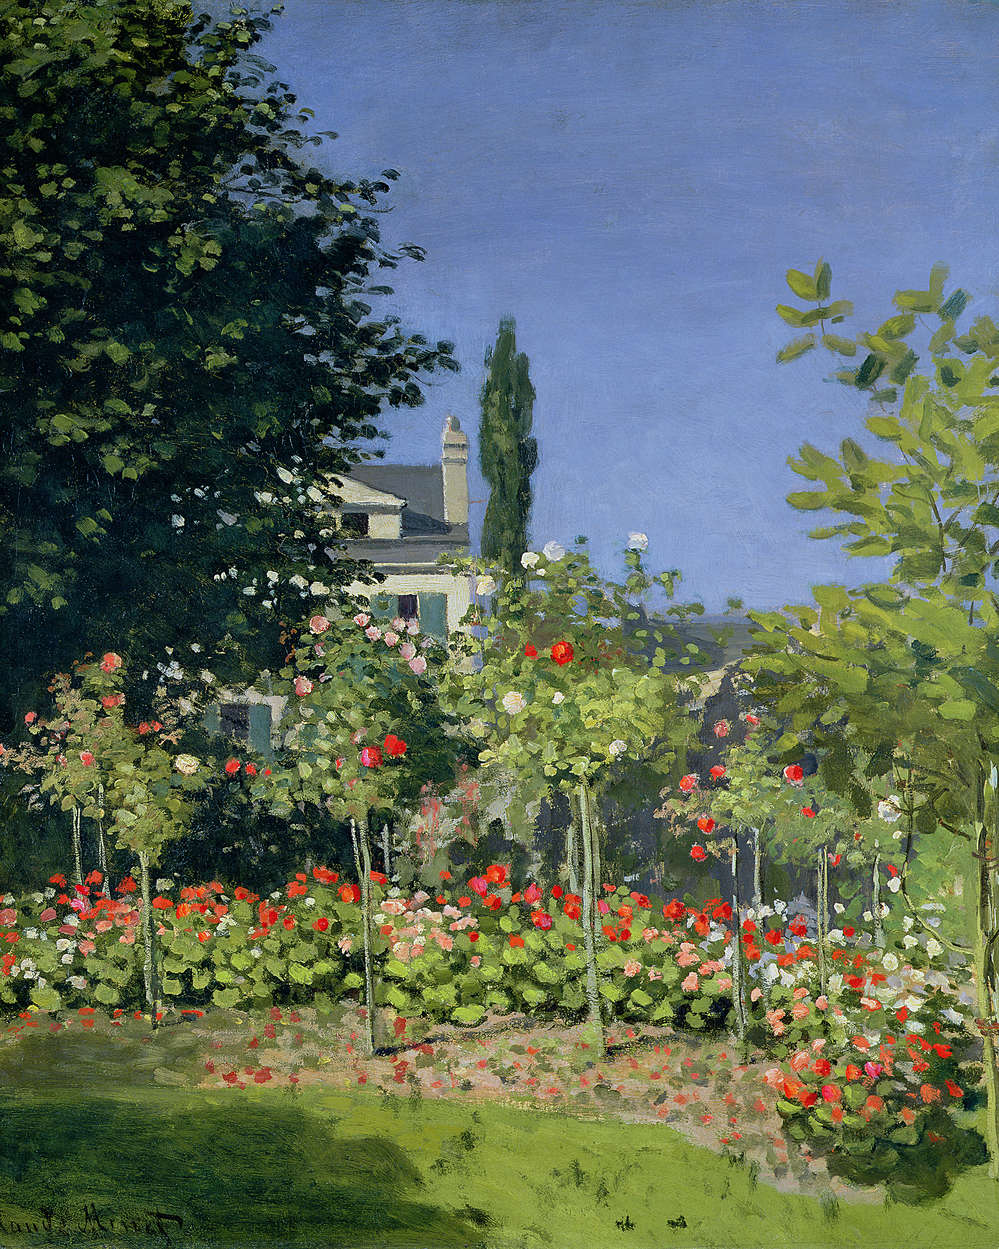             Muurschildering "Bloeiende tuin in SainteAdresse" van Claude Monet
        